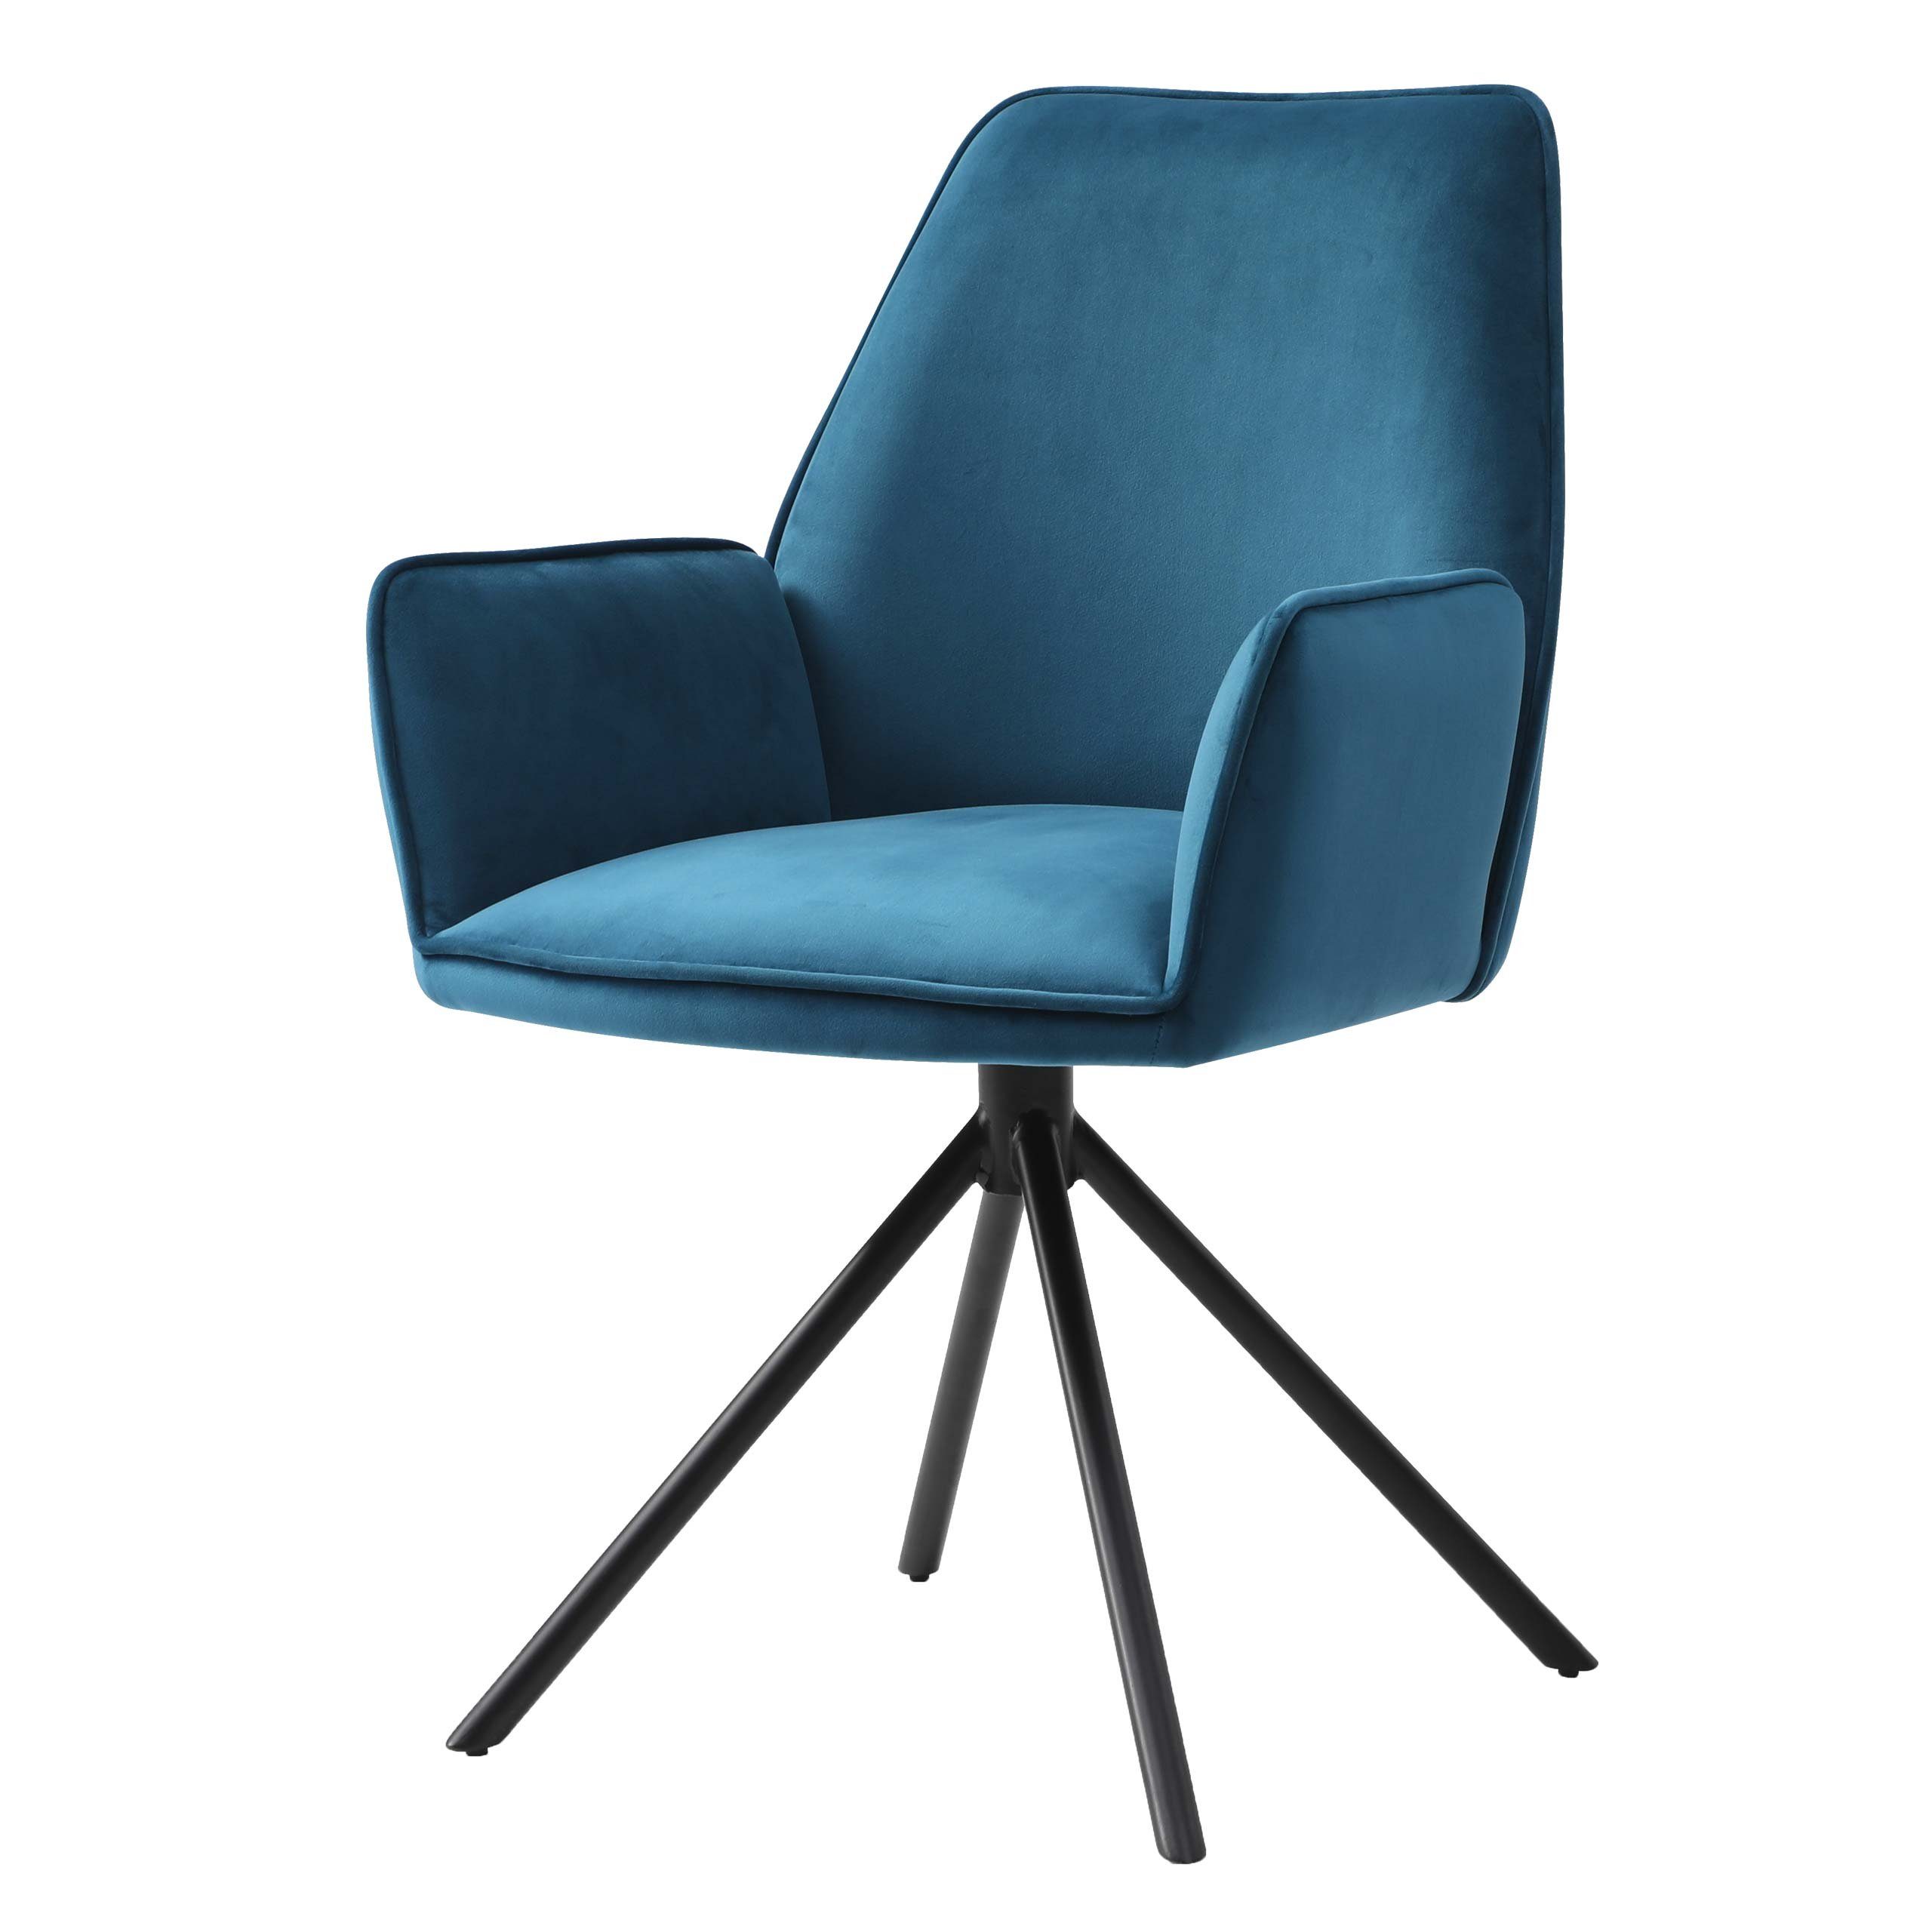 MCW Esszimmerstuhl MCW-G67 (kein Set), Hochwertige Verarbeitung, 90° drehbar in beide Richtung, modern türkis-blau | blau | Stühle